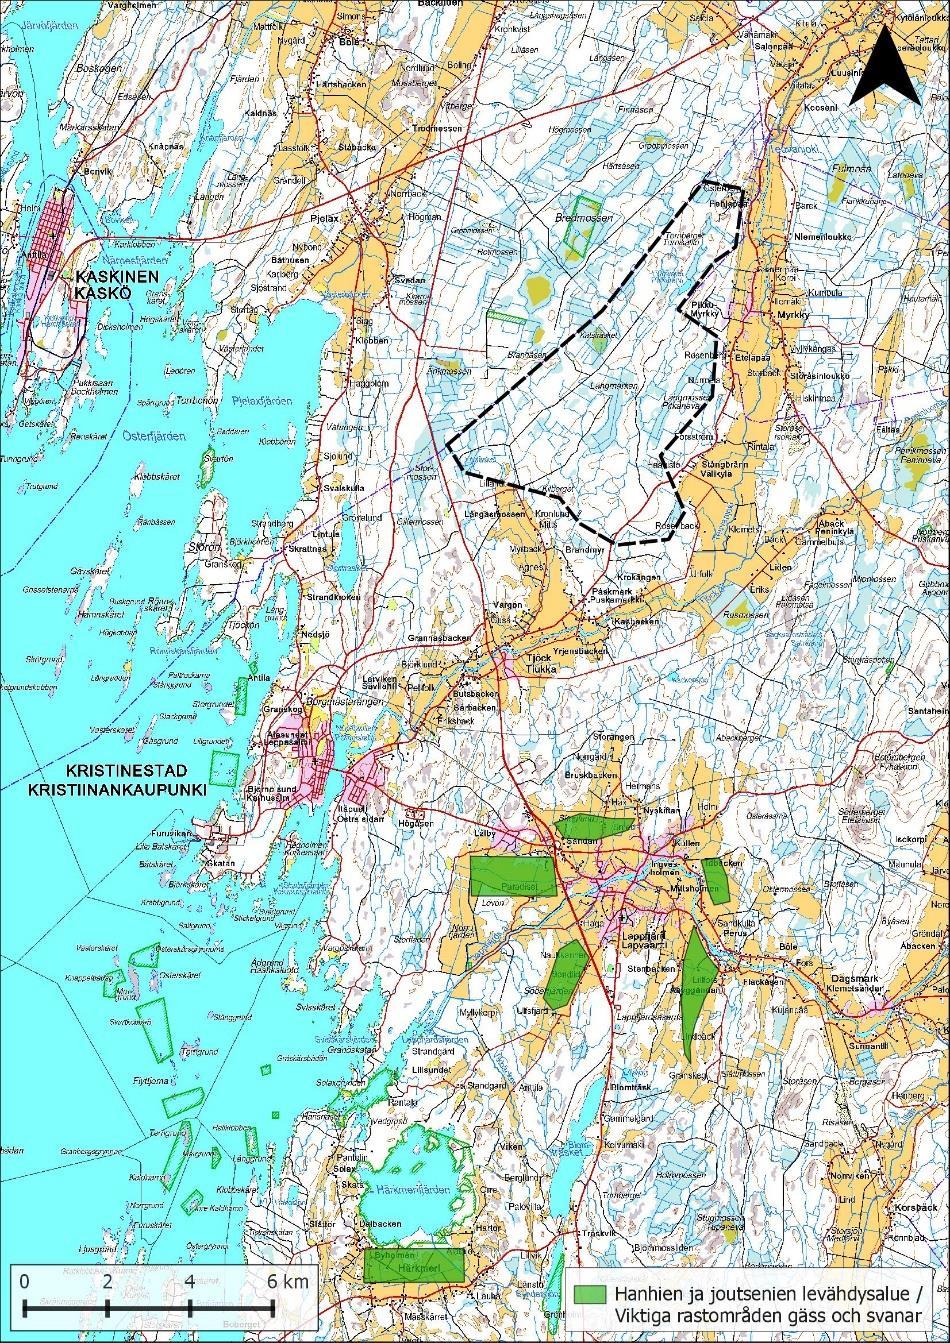 Figur 77: Gässens och svanarnas viktigaste rastområden är belägna söder om projektområdet i Härkmeri och Lappfjärd.